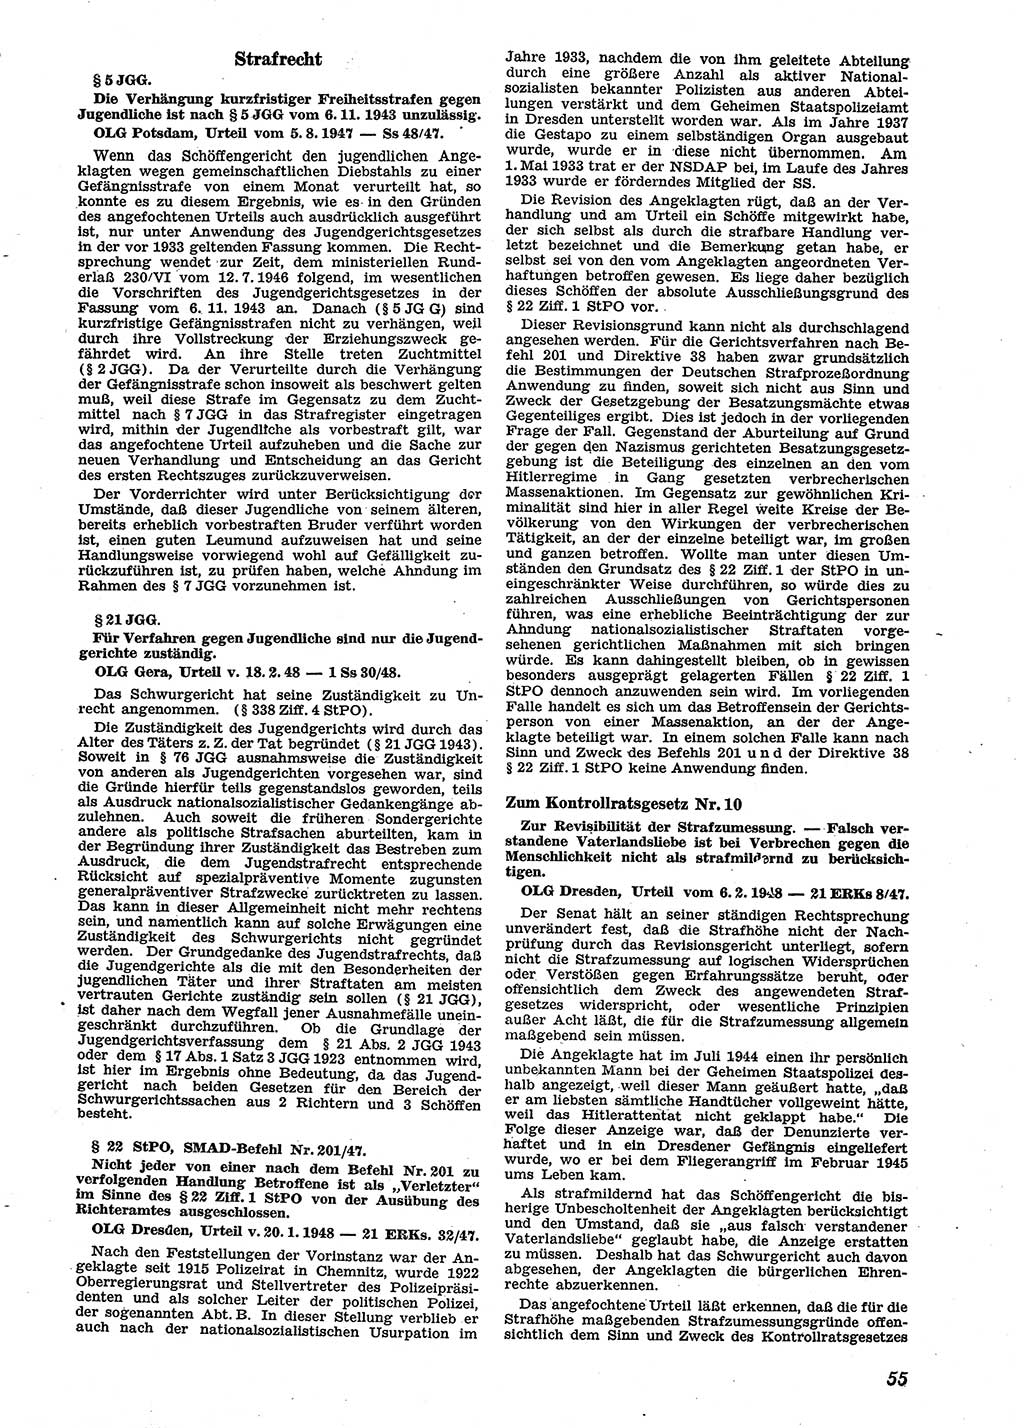 Neue Justiz (NJ), Zeitschrift für Recht und Rechtswissenschaft [Sowjetische Besatzungszone (SBZ) Deutschland], 2. Jahrgang 1948, Seite 55 (NJ SBZ Dtl. 1948, S. 55)